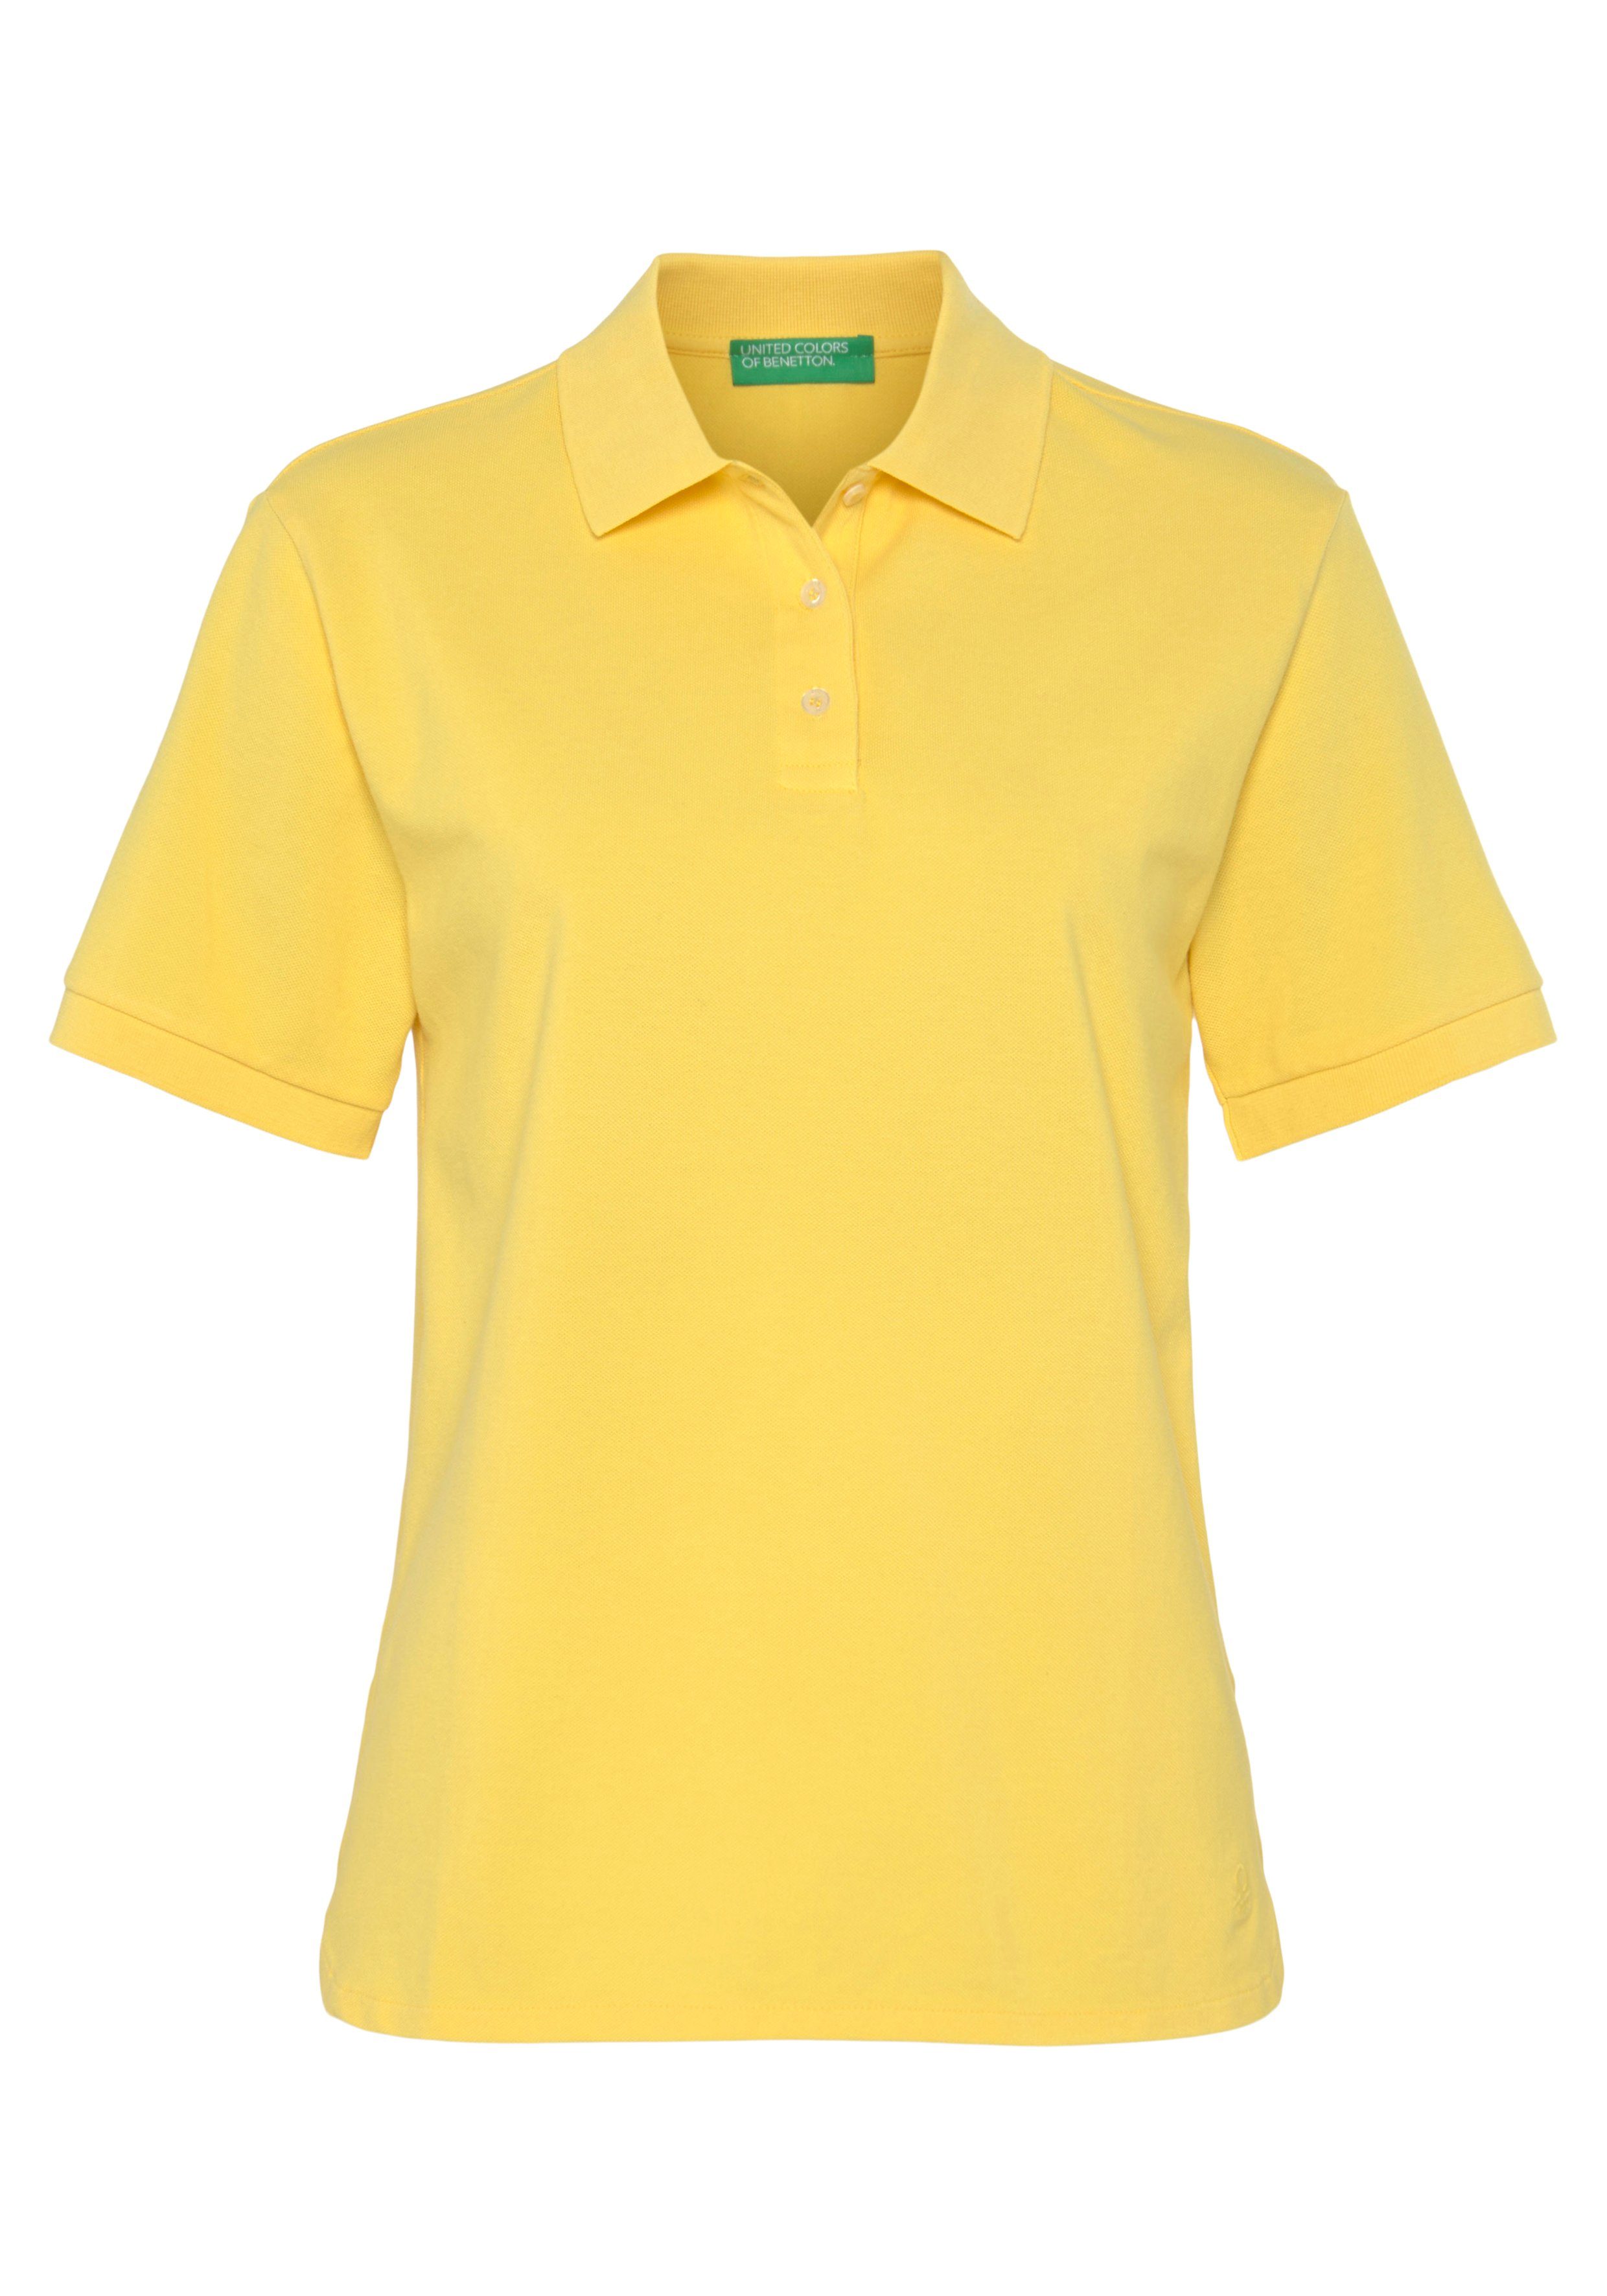 United Colors of Benetton Poloshirt mit perlmuttfarbenen Knöpfen gelb | Poloshirts